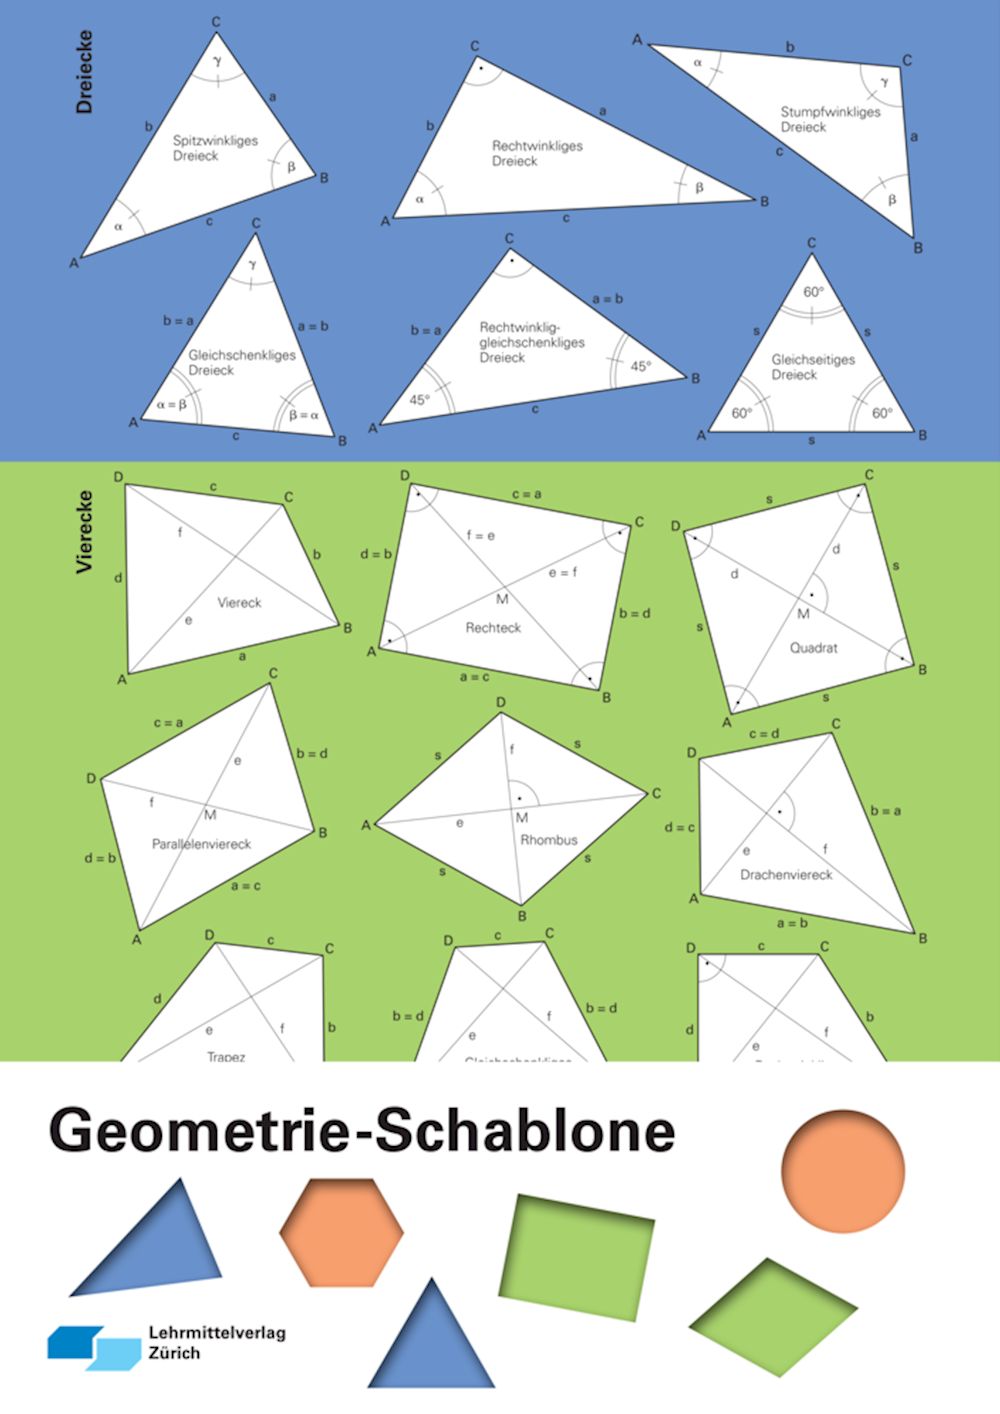 Geometrie-Schablone zu Mathe 1 Sek I Zeichenschablone transparent, unbedruckt